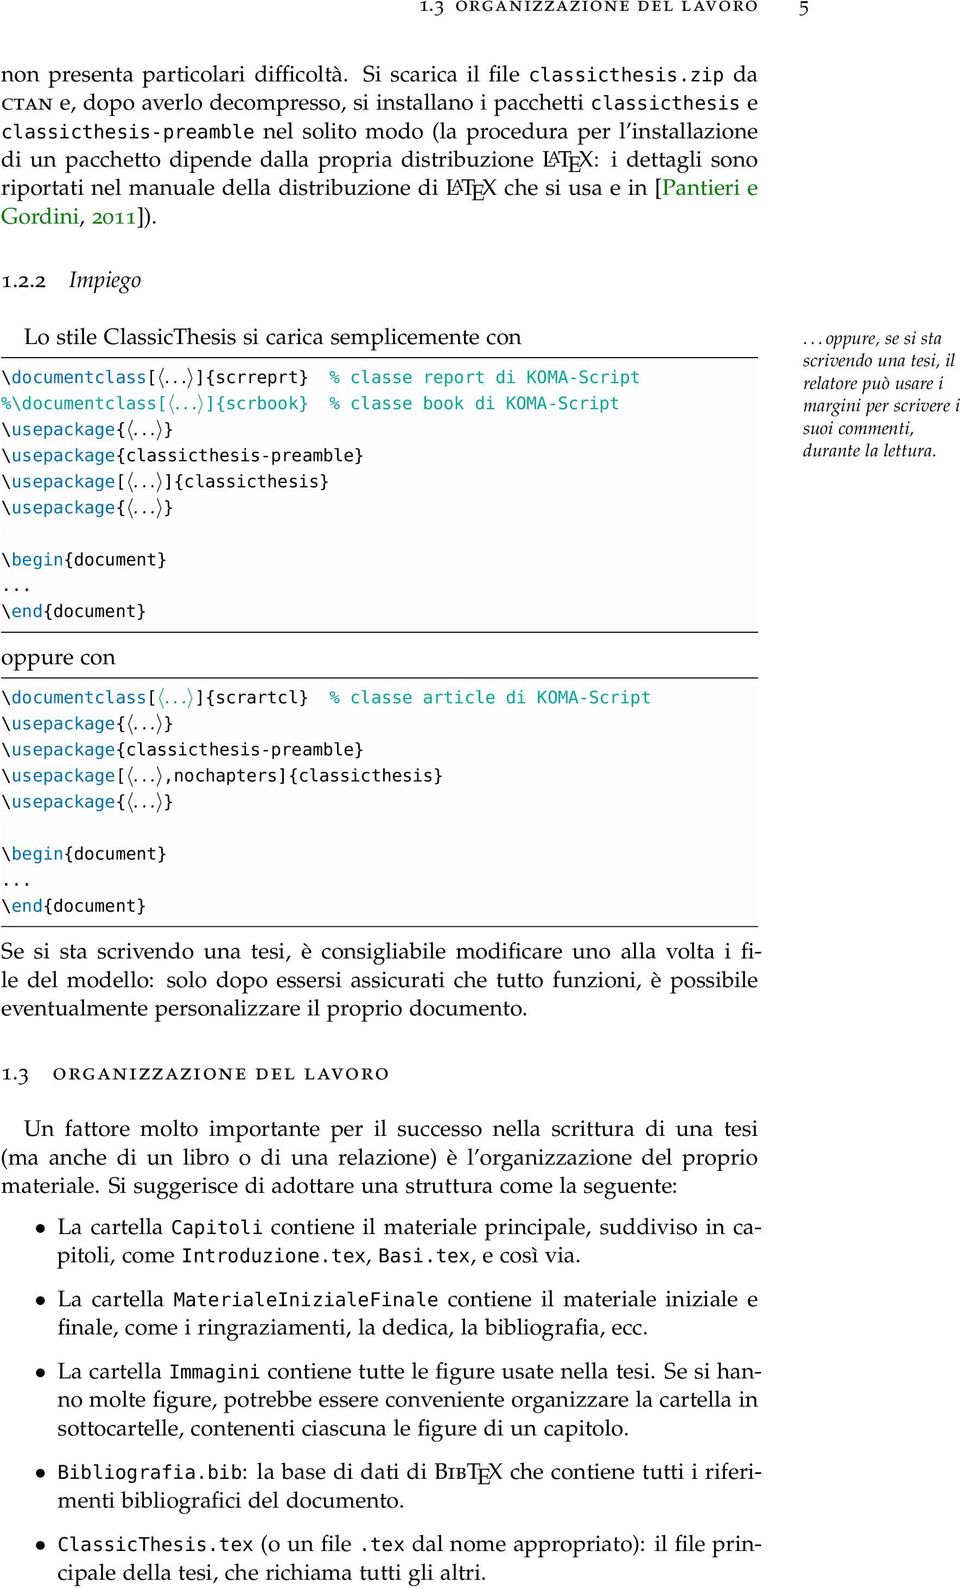 distribuzione LATEX: i dettagli sono riportati nel manuale della distribuzione di LATEX che si usa e in [Pantieri e Gordini, 20